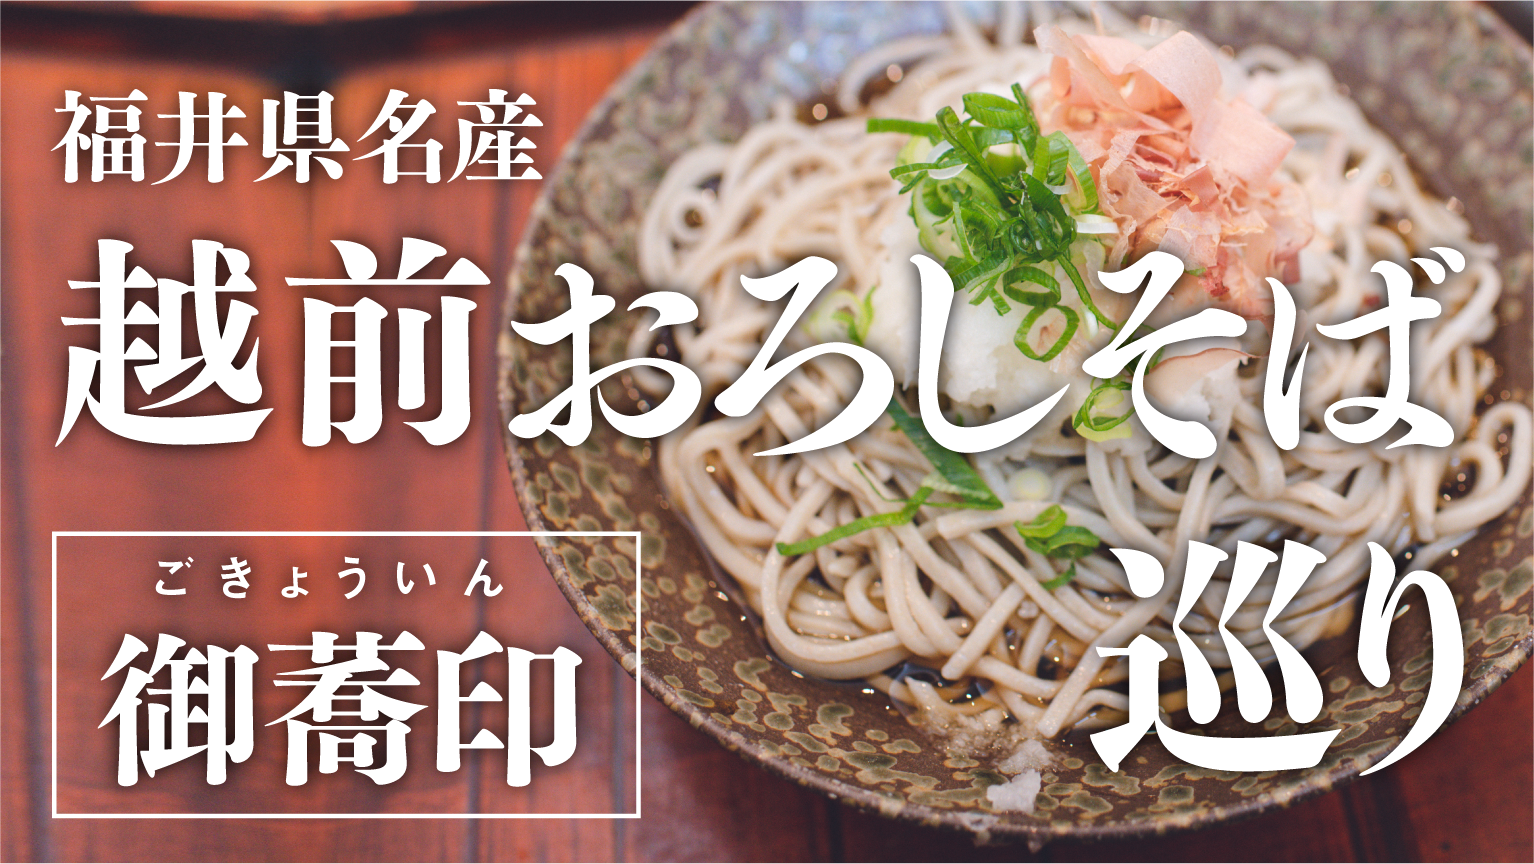 埼玉県が「もっと県産米を食べようキャンペーン」を開催　
県産米と一緒に写った写真を応募すると抽選で30名に
「彩のきずな」5kg＆オリジナルカトラリーが当たる！